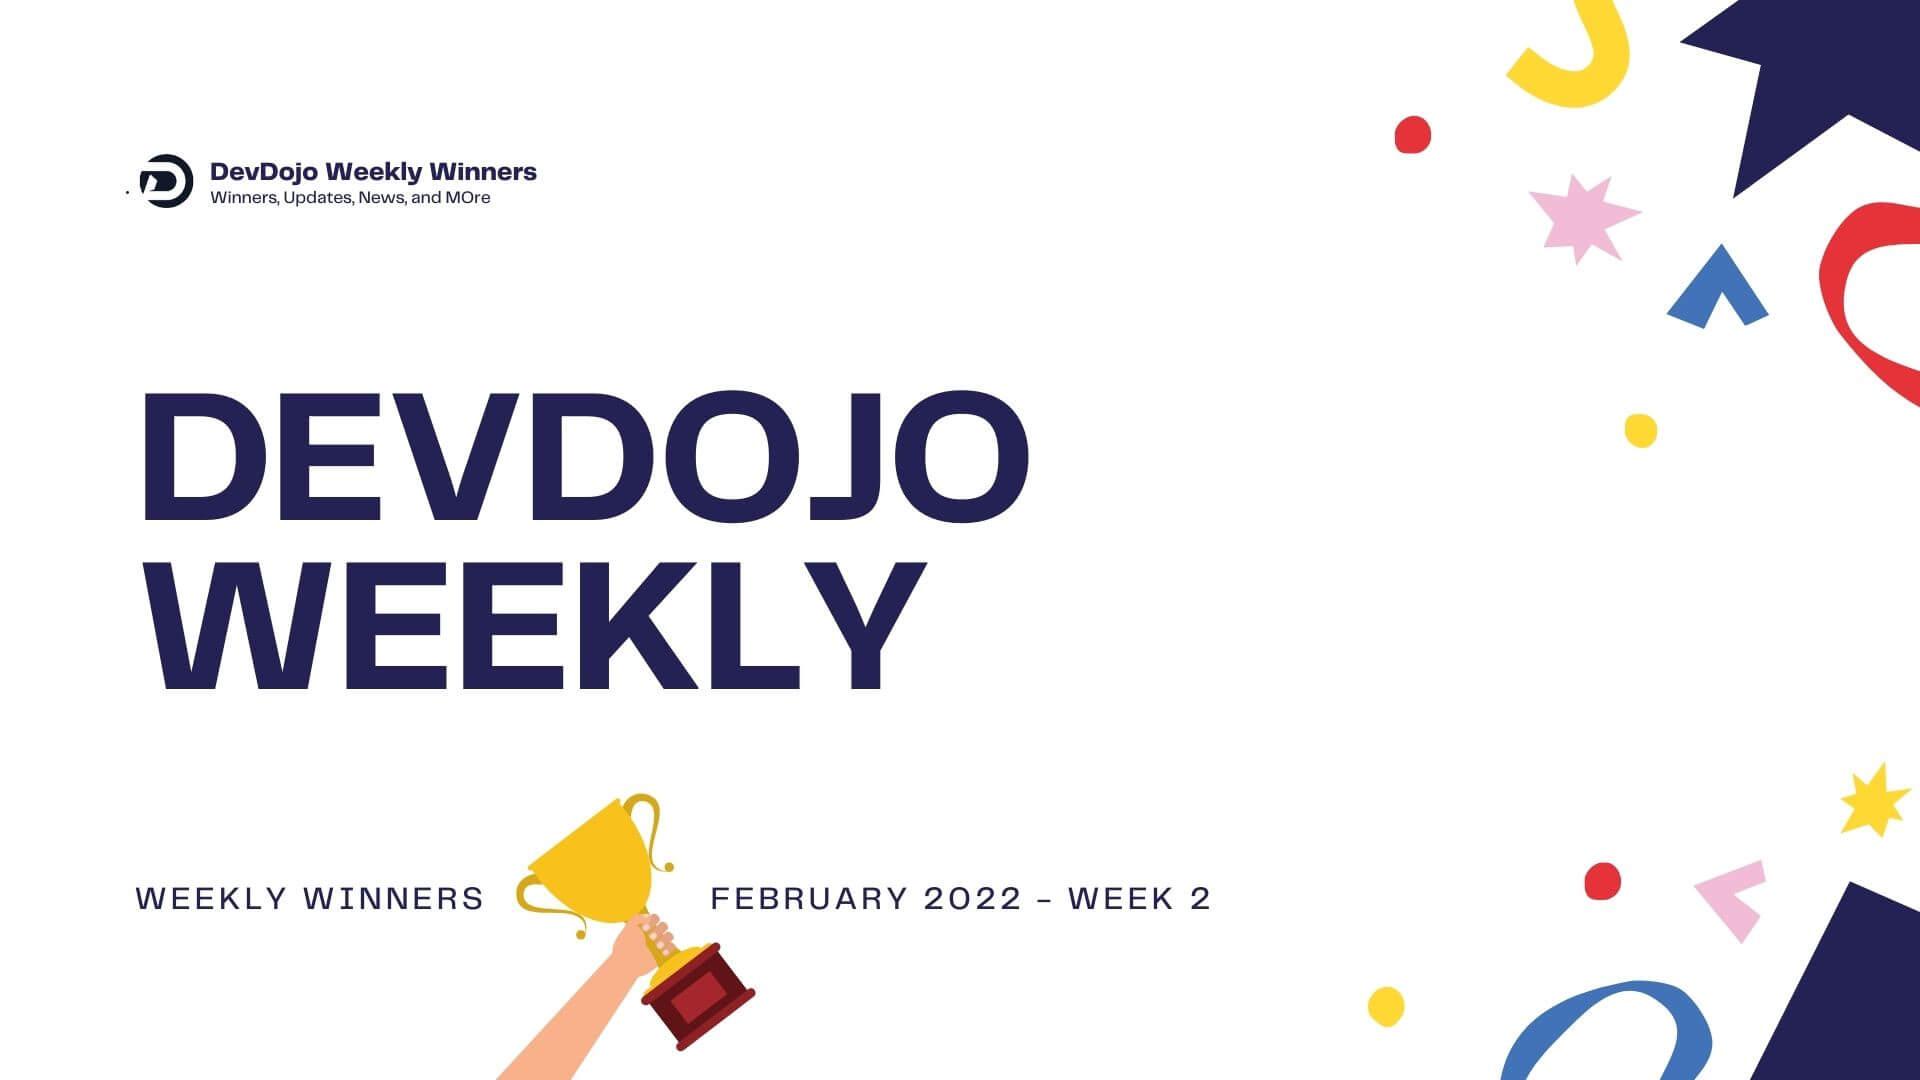 DevDojo Weekly - February 2022 - Week 3